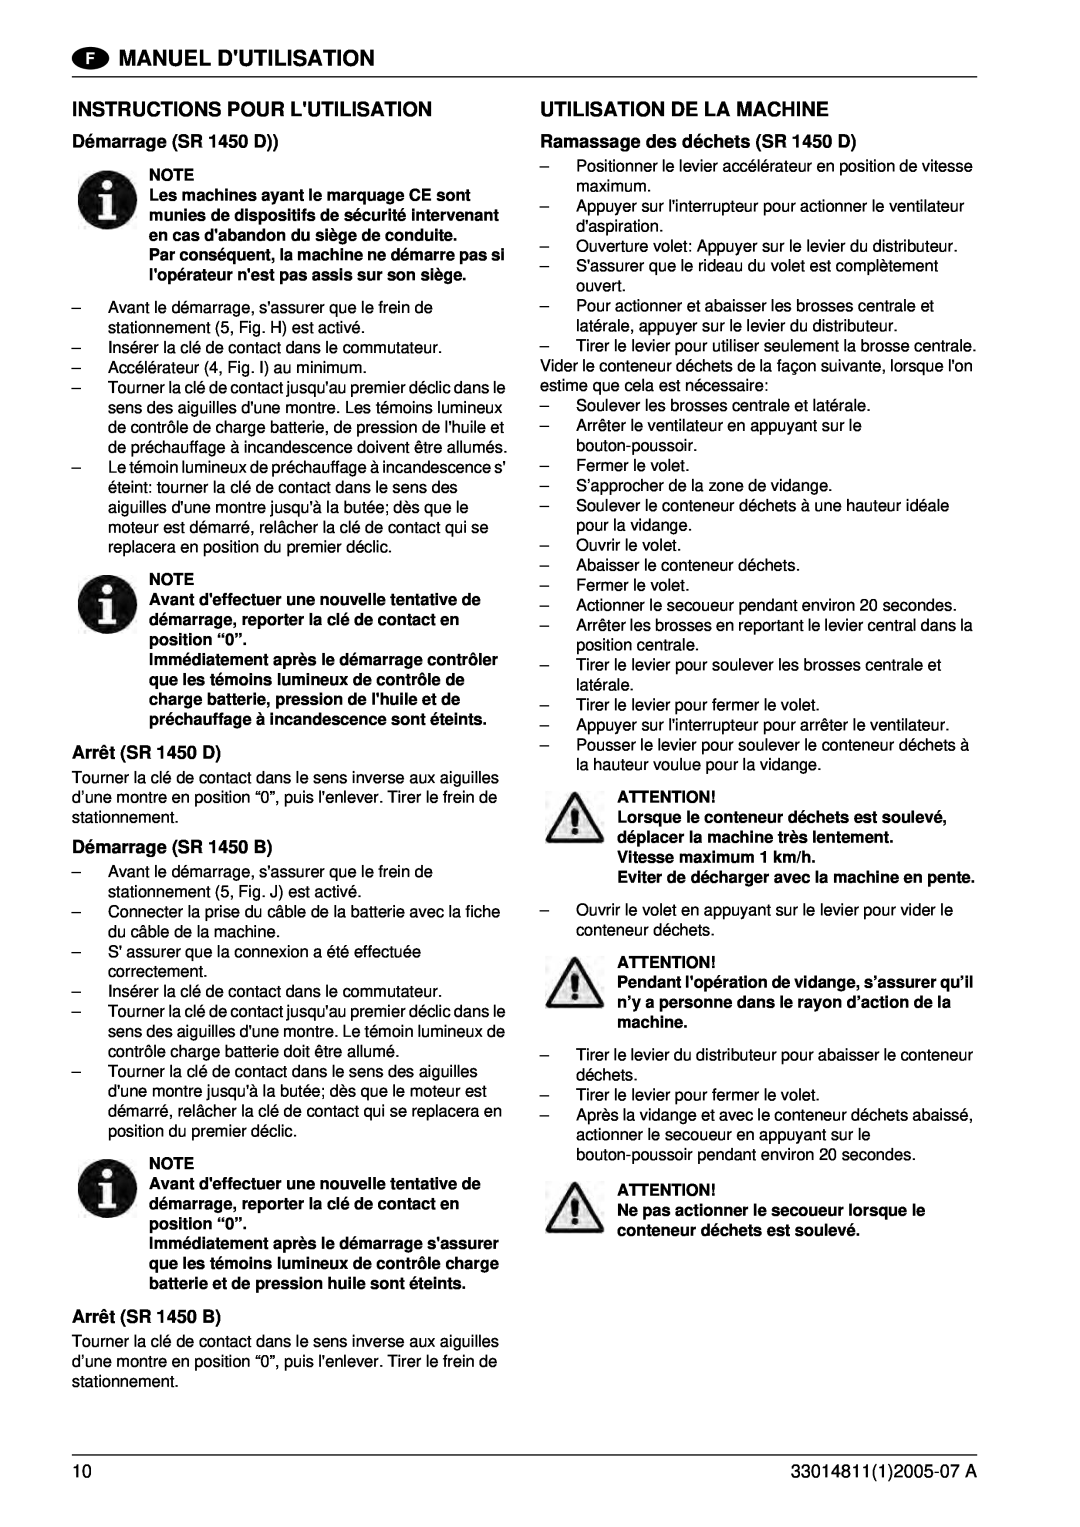 Nilfisk-ALTO SR 1450 B-D Instructions Pour Lutilisation, Utilisation De La Machine, Démarrage SR 1450 D, Arrêt SR 1450 D 